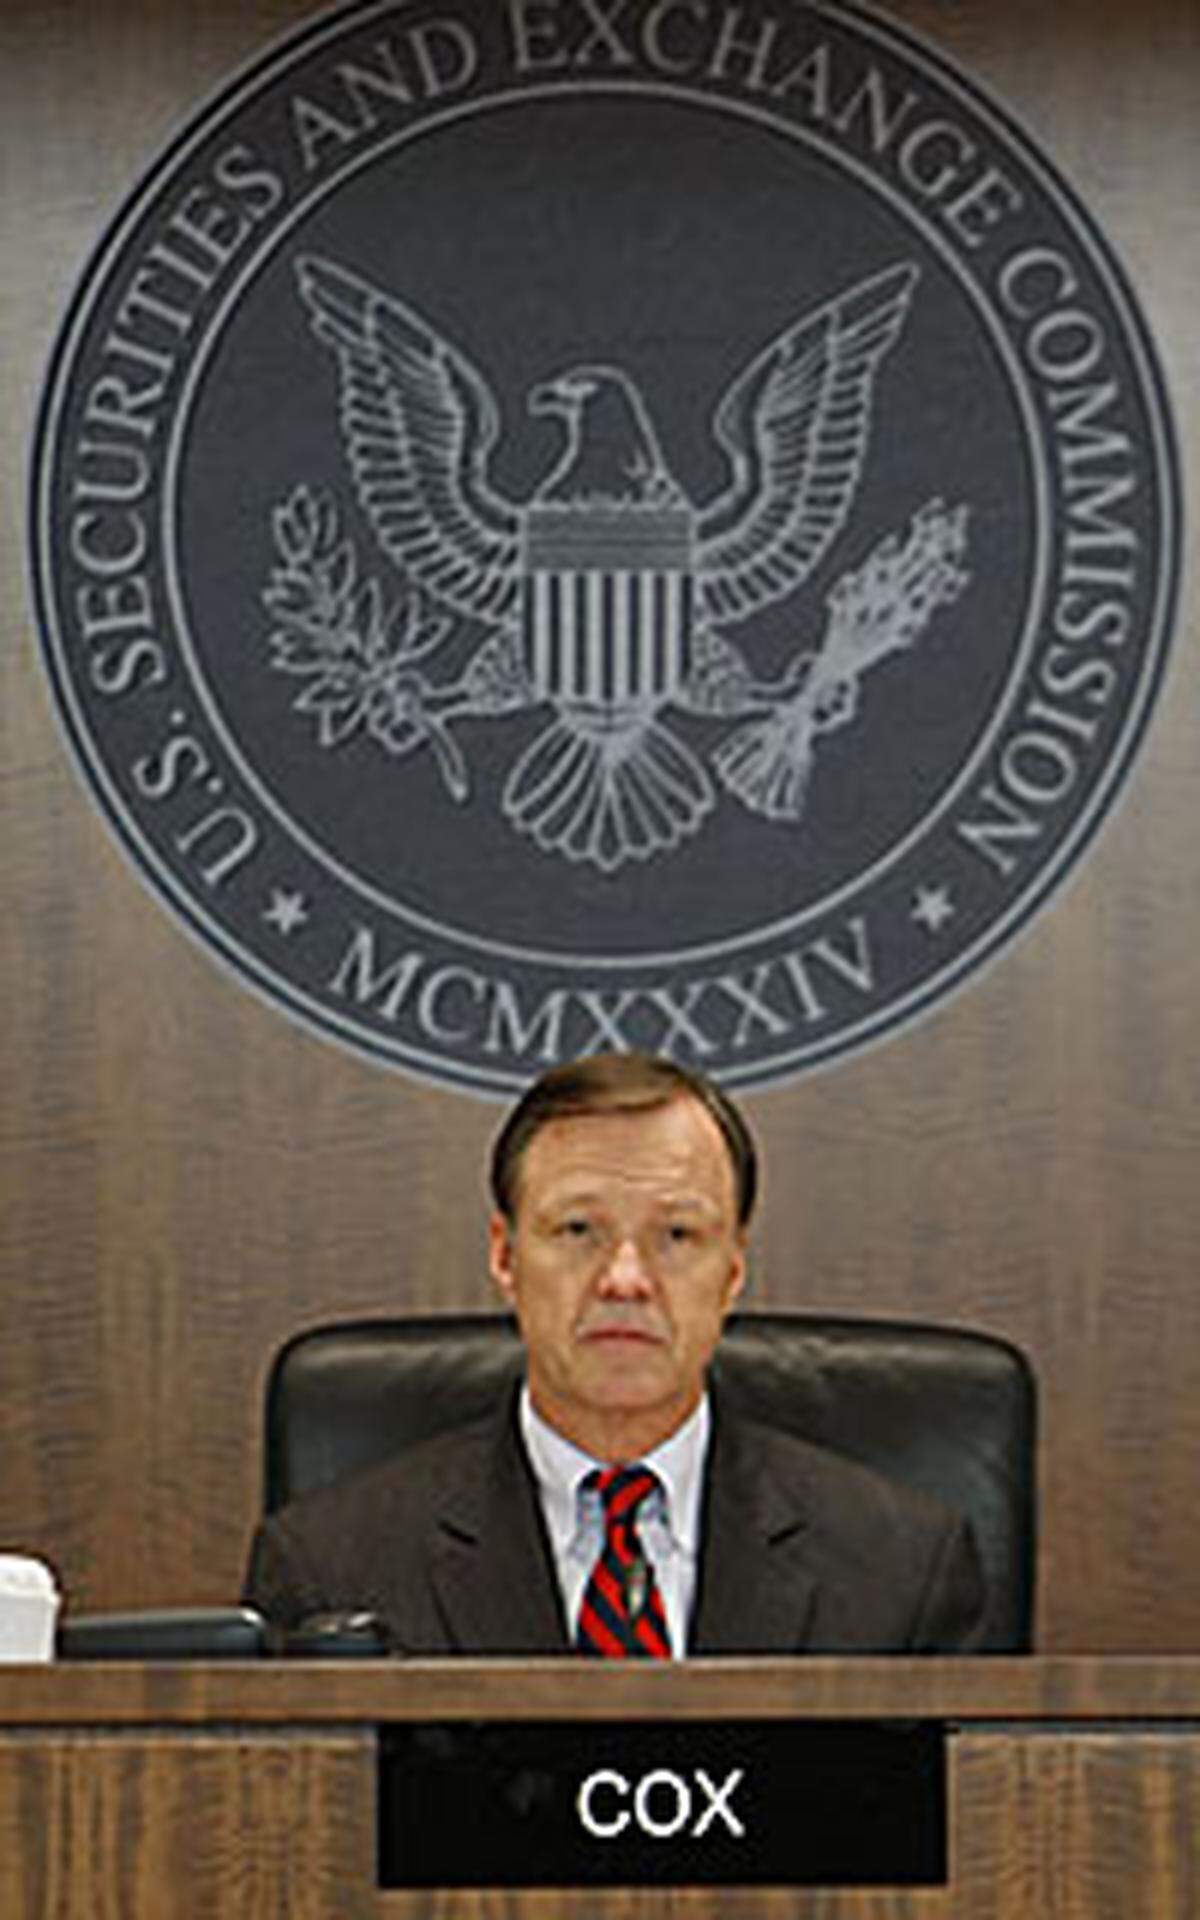 Zurück zur Gegenwart: Im Fall Madoff hat die US-Finanzaufsicht SEC schwere Fehler eingestanden. Mindestens seit 1999 war mehreren konkreten Vorwürfen gegen den New Yorker Investmentmanager Bernard Madoff und sein gigantisches "Schneeball-System" nicht ausreichend nachgegangen worden, gab SEC-Chef Christopher Cox zu.